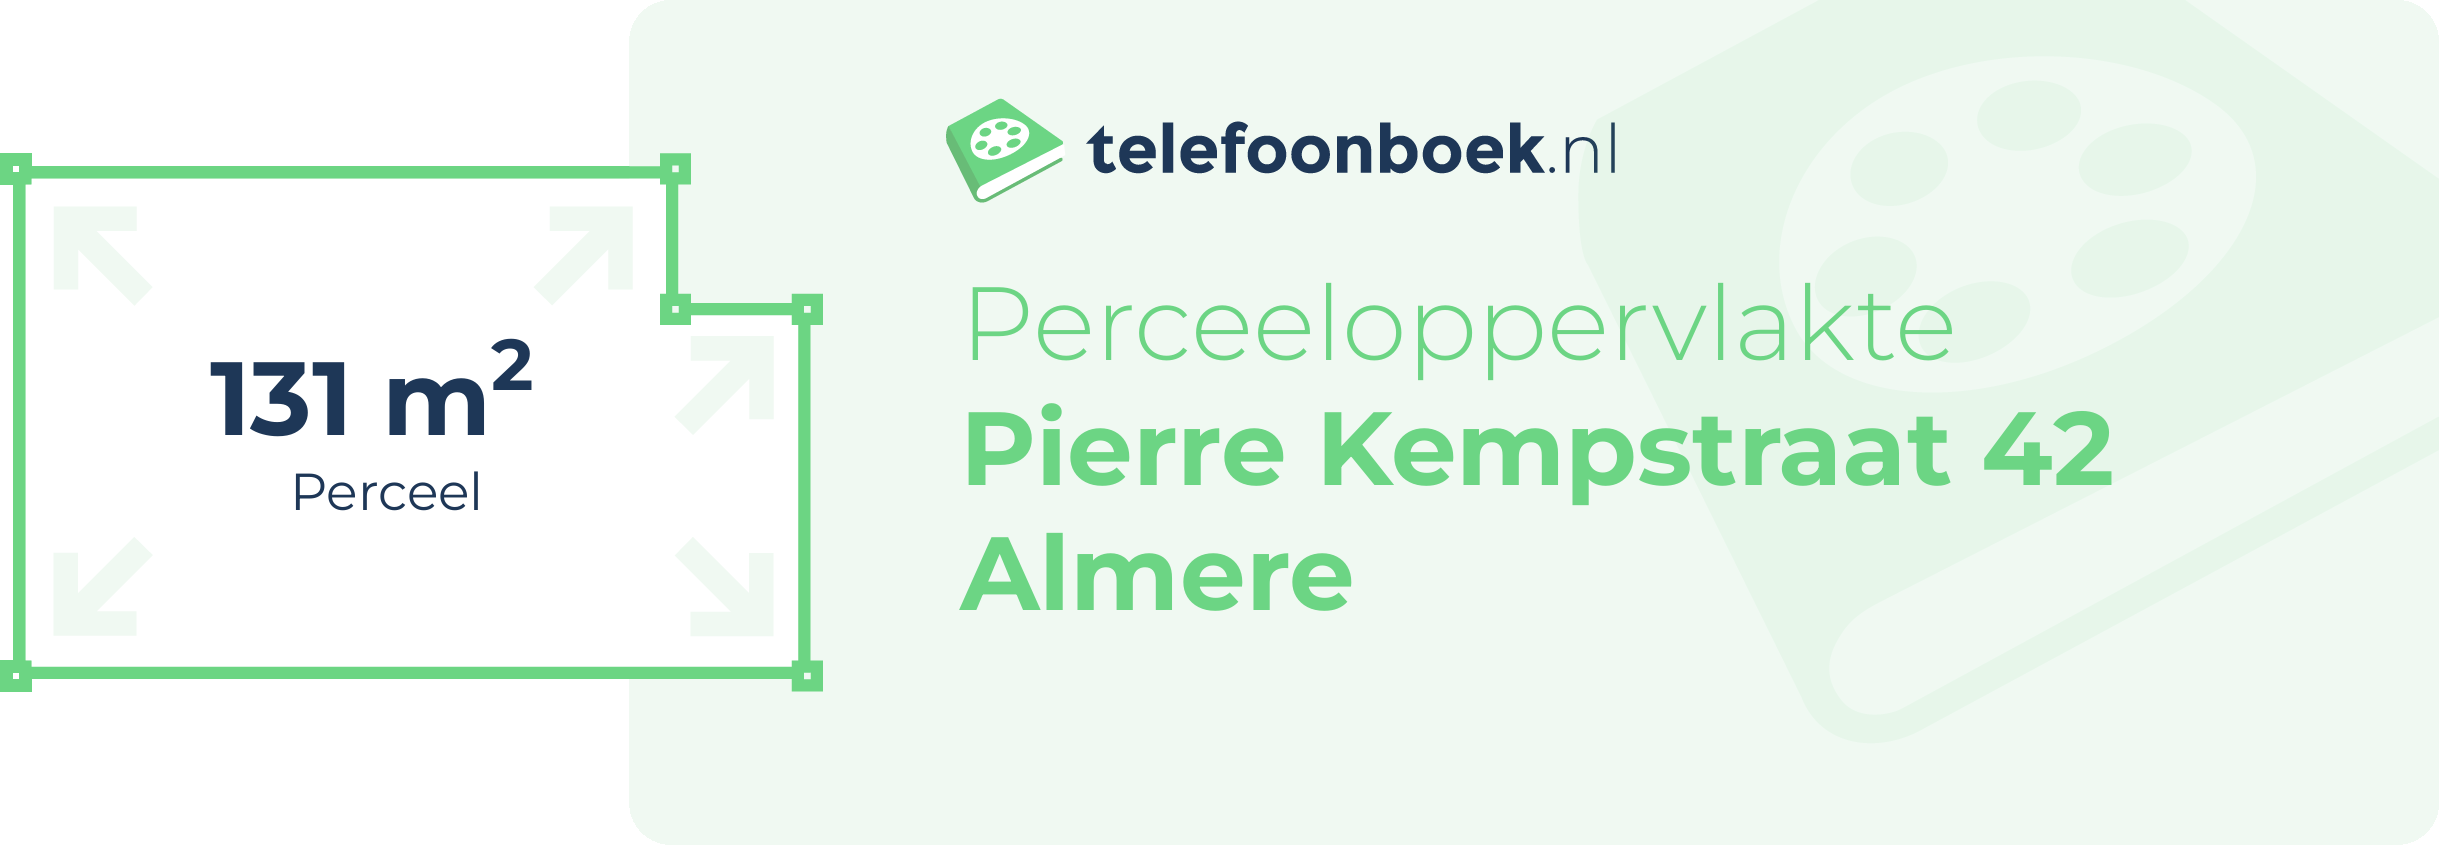 Perceeloppervlakte Pierre Kempstraat 42 Almere